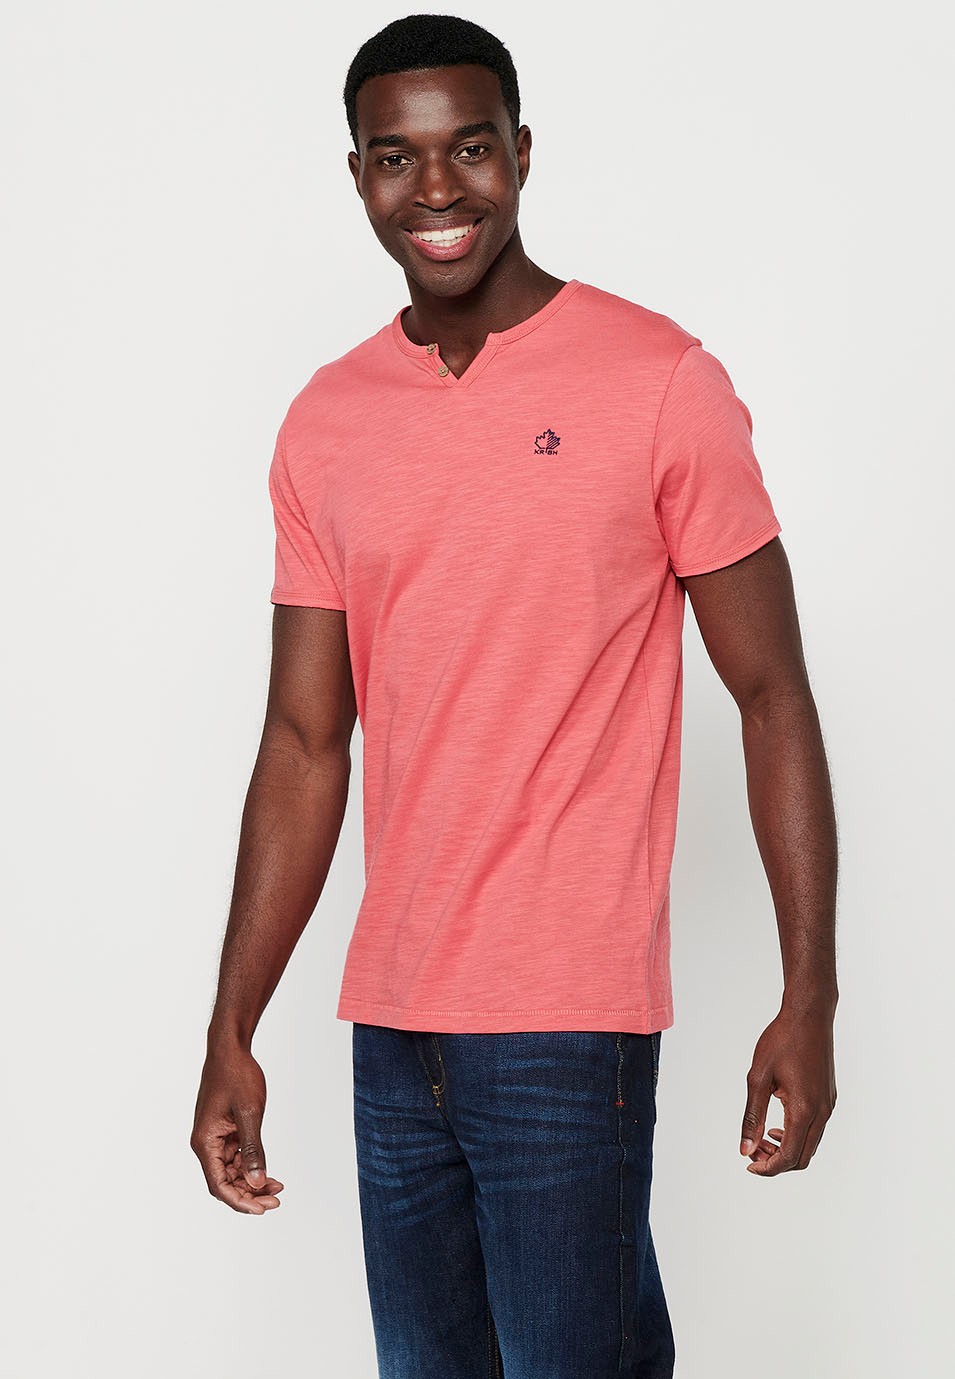 Basic-Kurzarm-T-Shirt aus Baumwolle, V-Ausschnitt mit Knopf, rosa Farbe für Herren